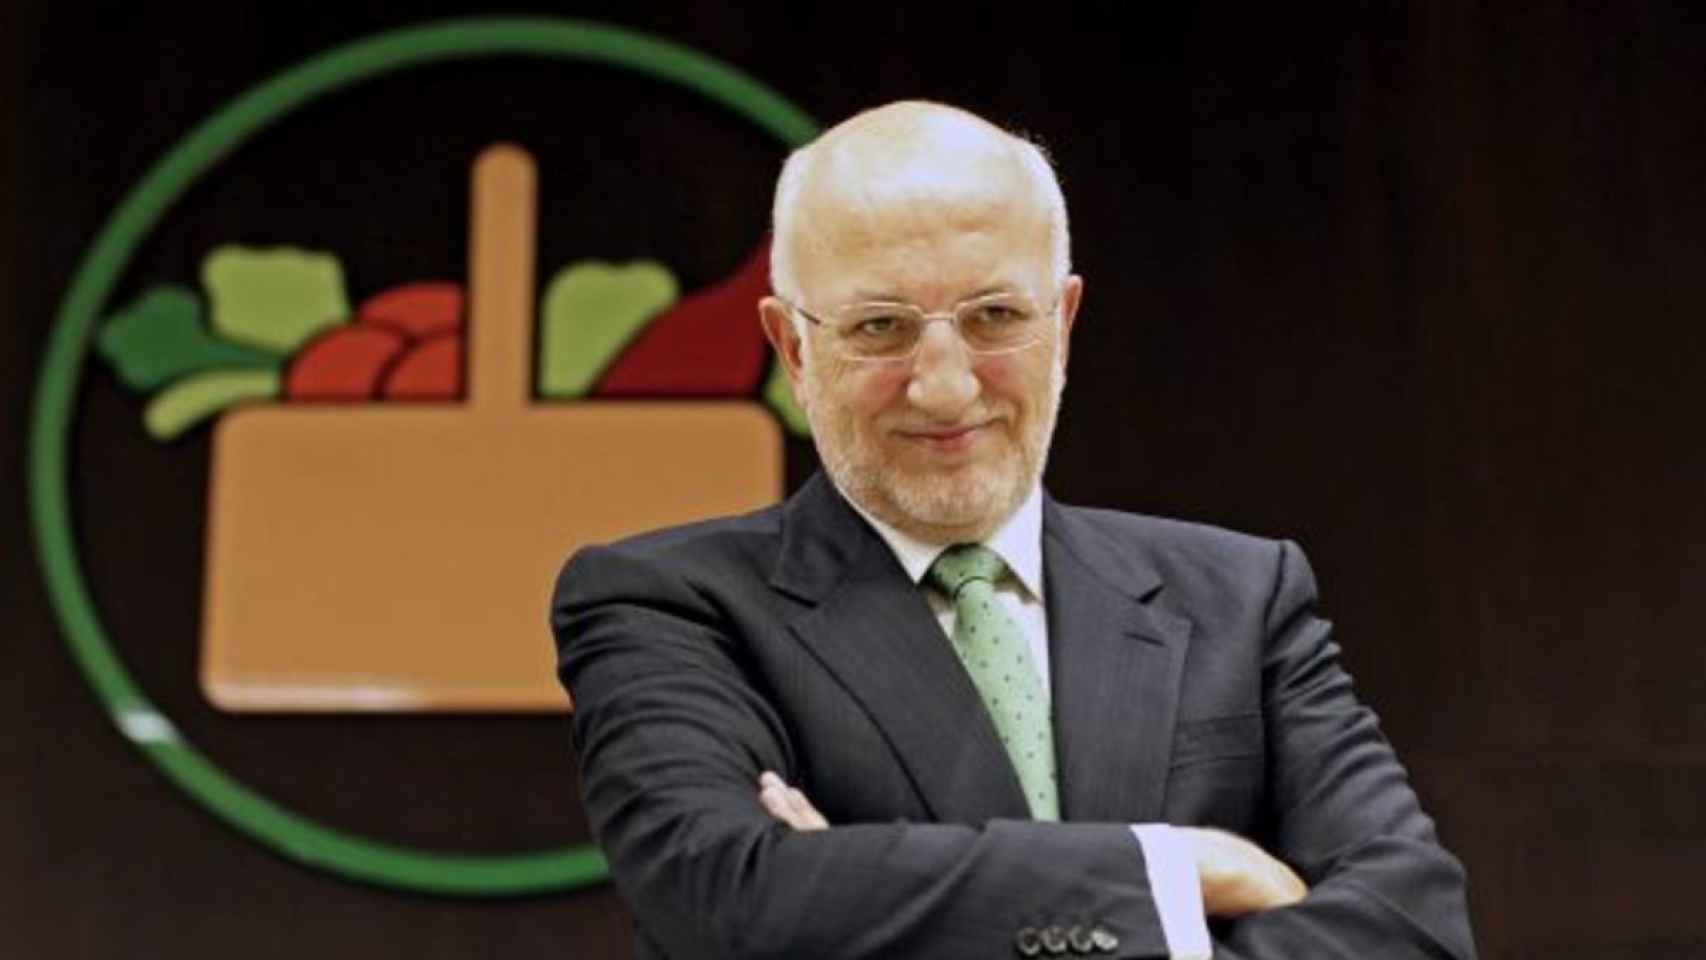 Juan Roig y Amancio Ortega, entre los empresarios más influyentes de España